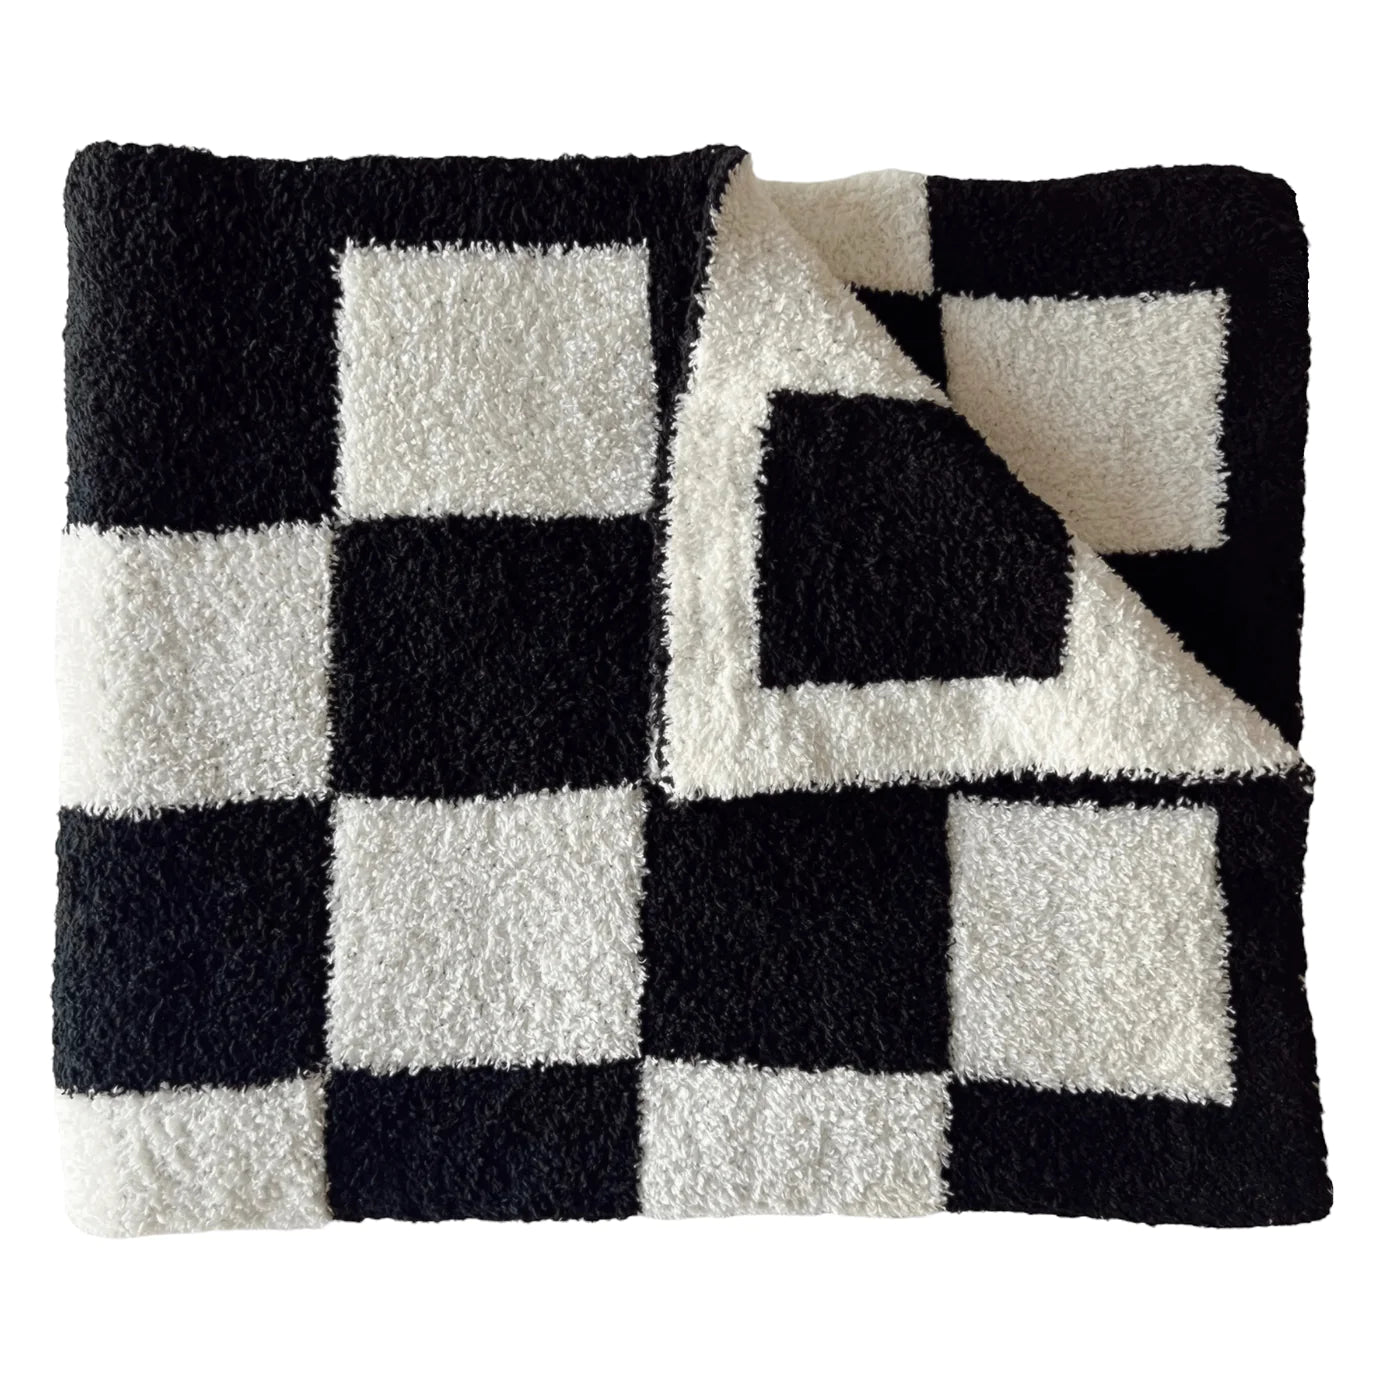 Bliss Checker Blanket-Black - Twinkle Twinkle Little One